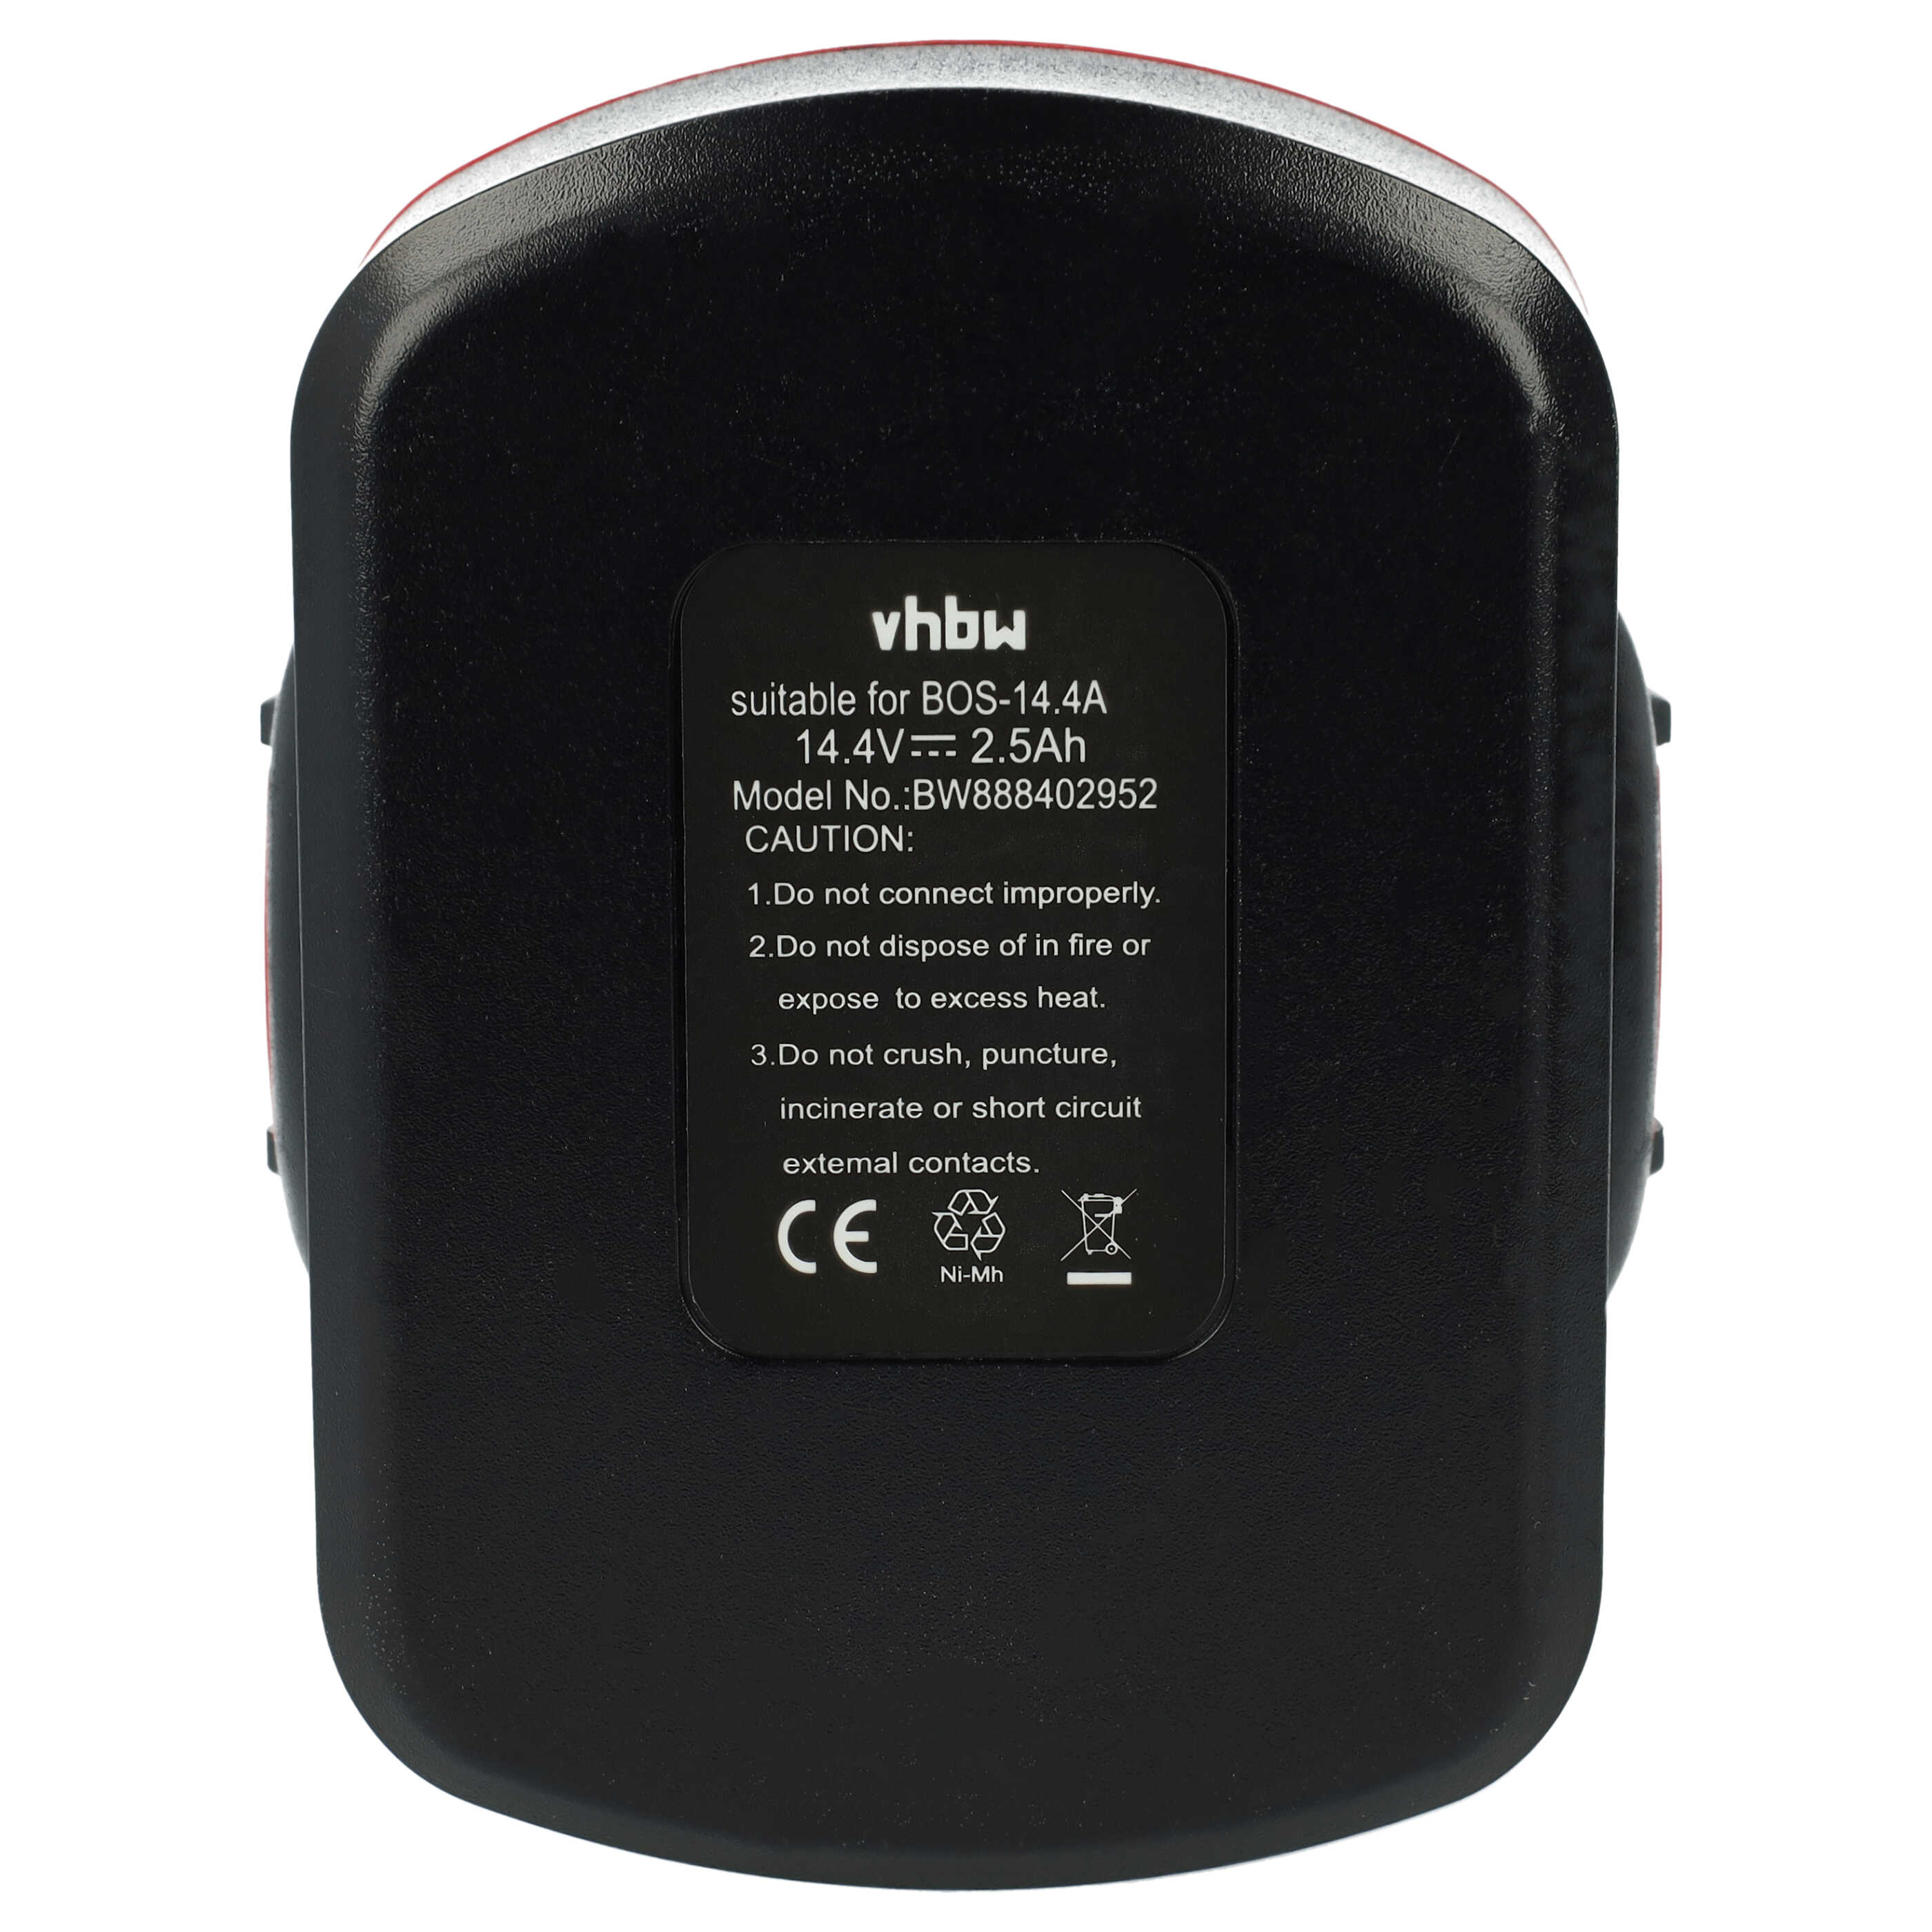 Batterie remplace Bosch 2 607 335 263, 1617S0004W pour outil électrique - 2500 mAh, 14,4 V, NiMH